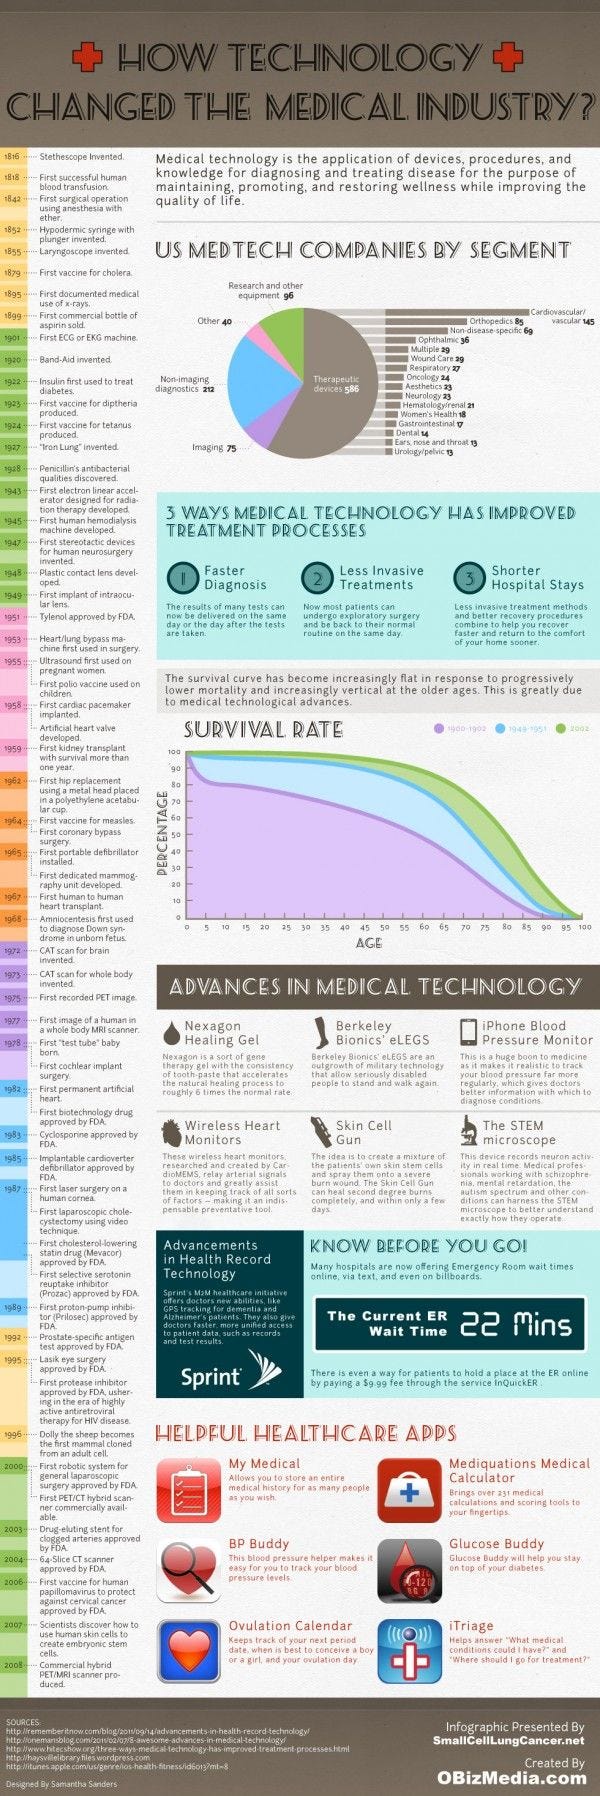 medtech_infographic.jpg